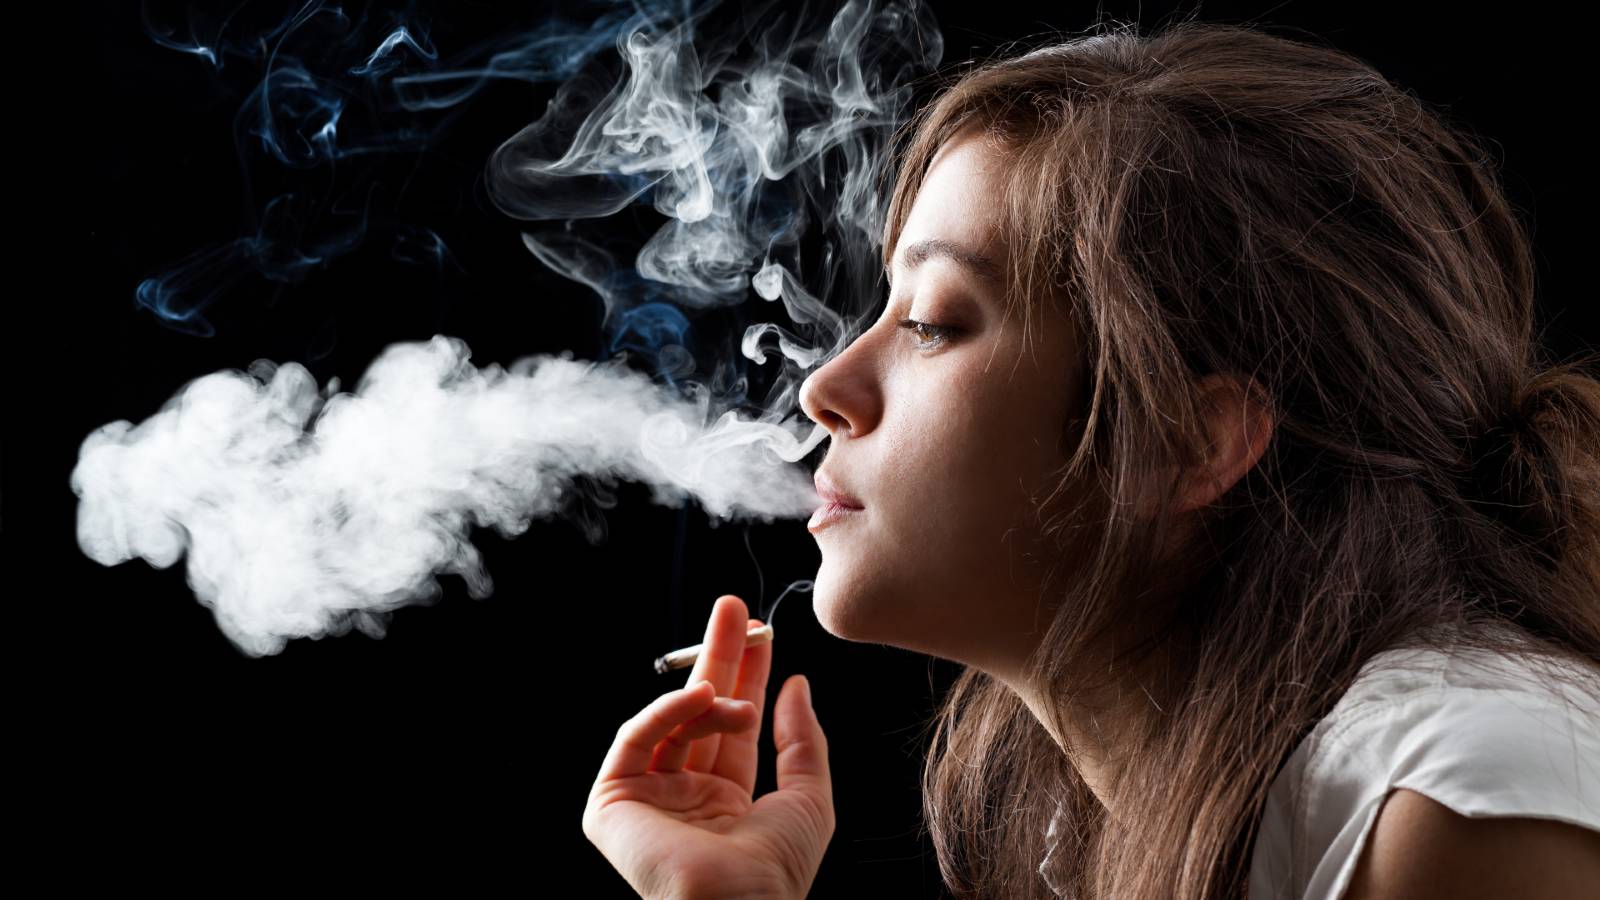 Jaane sexual health per smoking ka prabhav. – जानें सेक्सुअल हेल्थ पर स्मोकिंग का प्रभाव।